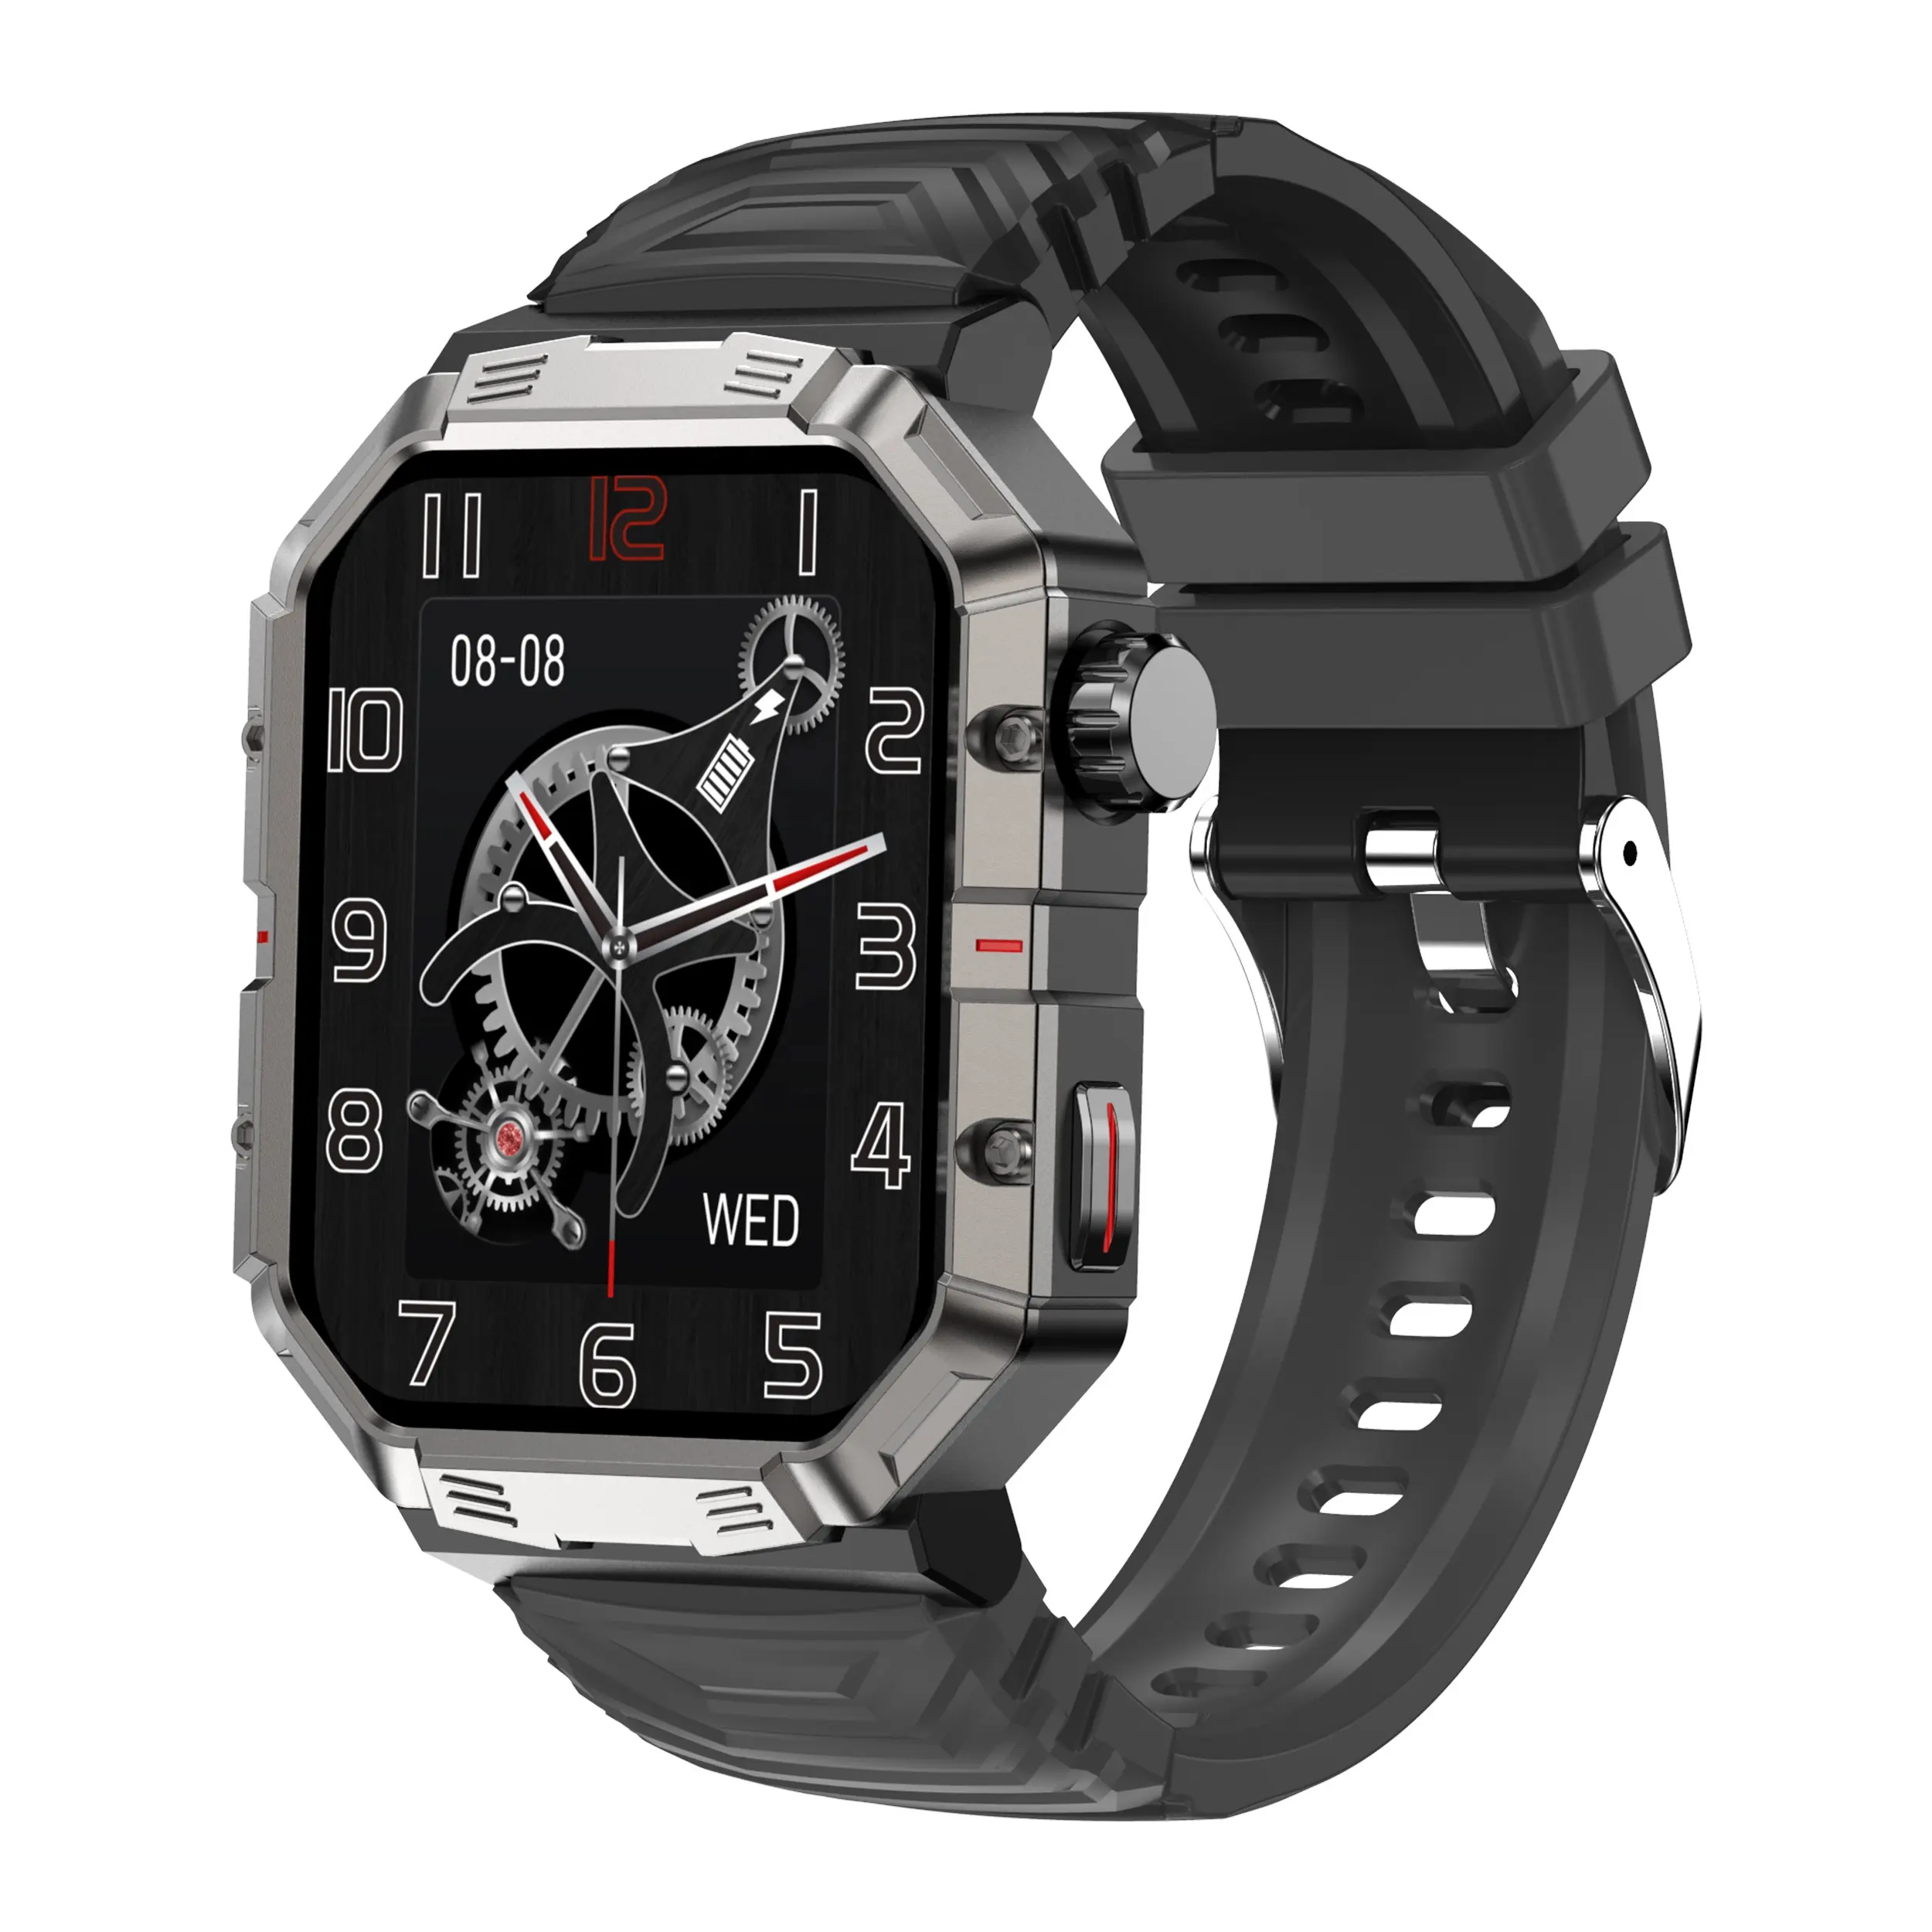 Pro GW55 montre intelligente hommes Sports de plein air 2.02 pouces grand écran IP68 étanche boussole moniteur de fréquence cardiaque Smartwatch